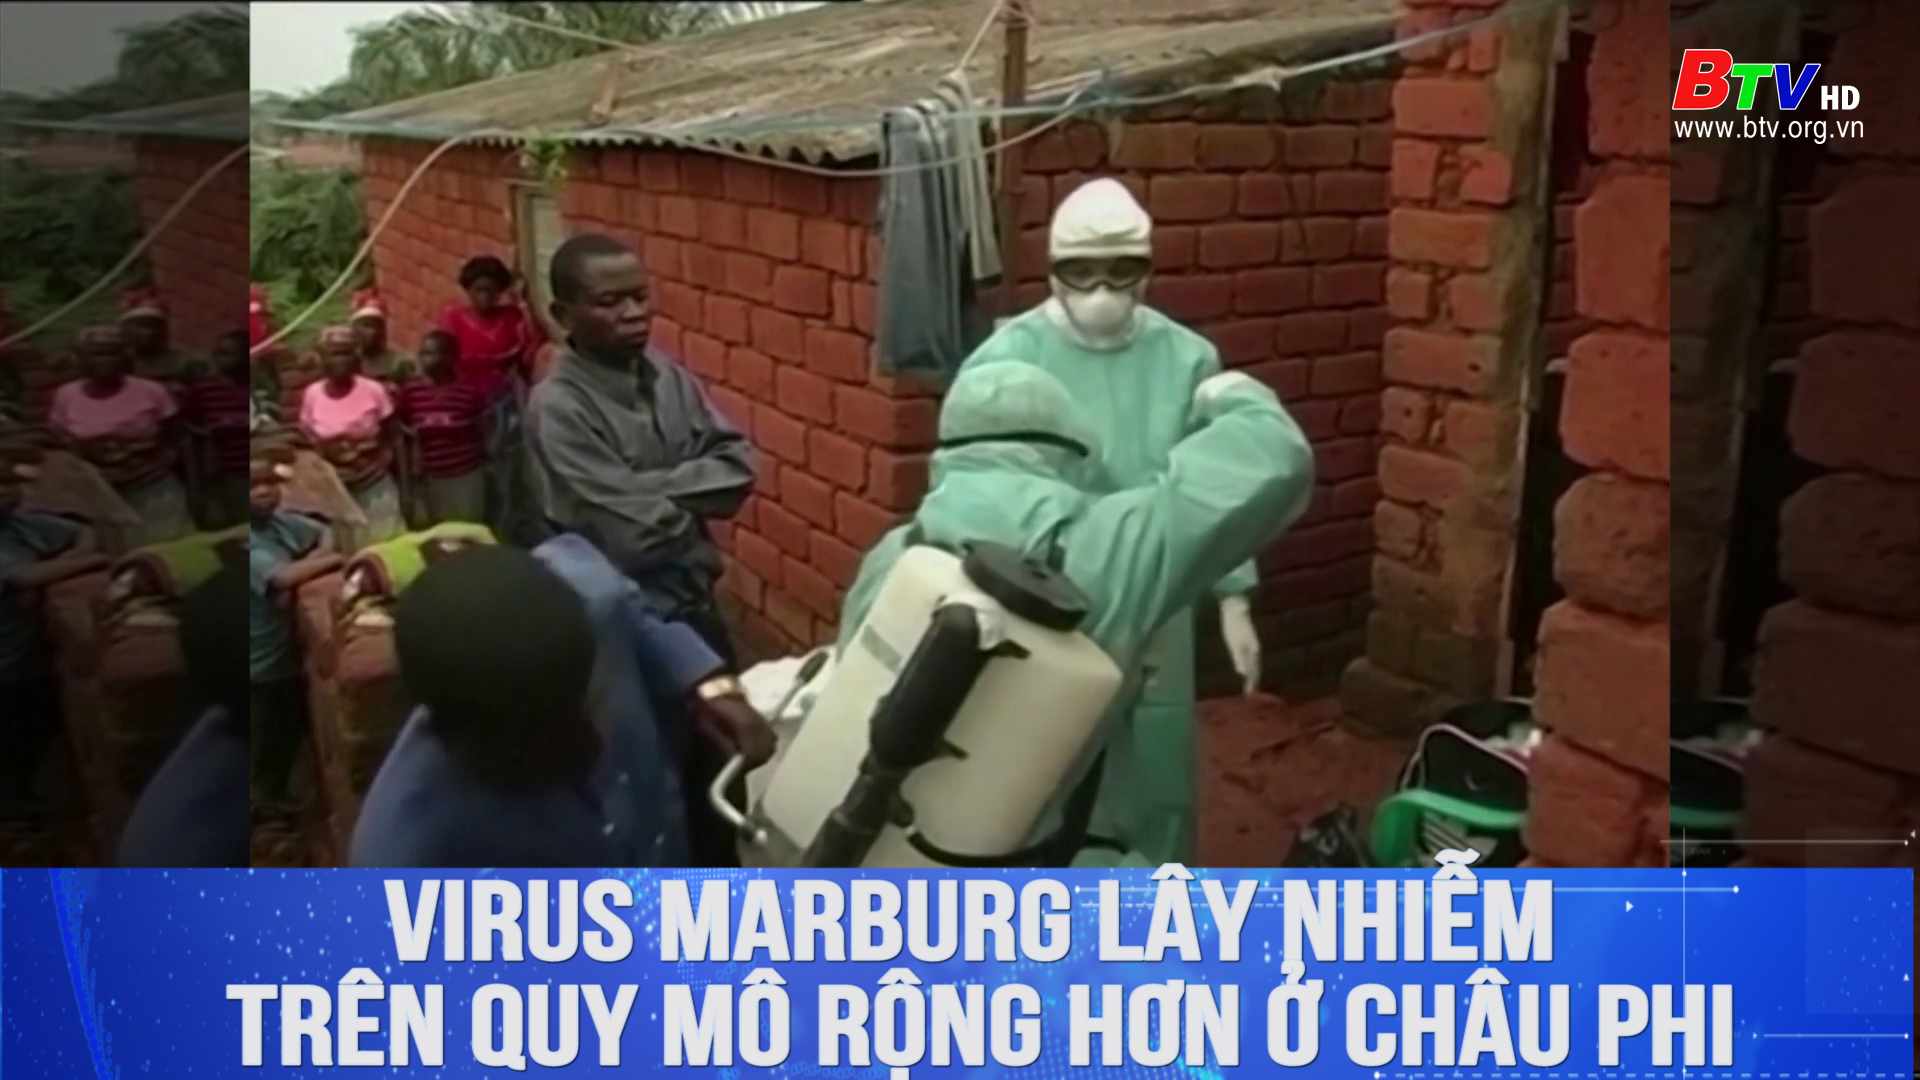 Virus Marburg lây nhiễm trên quy mô rộng hơn ở Châu Phi